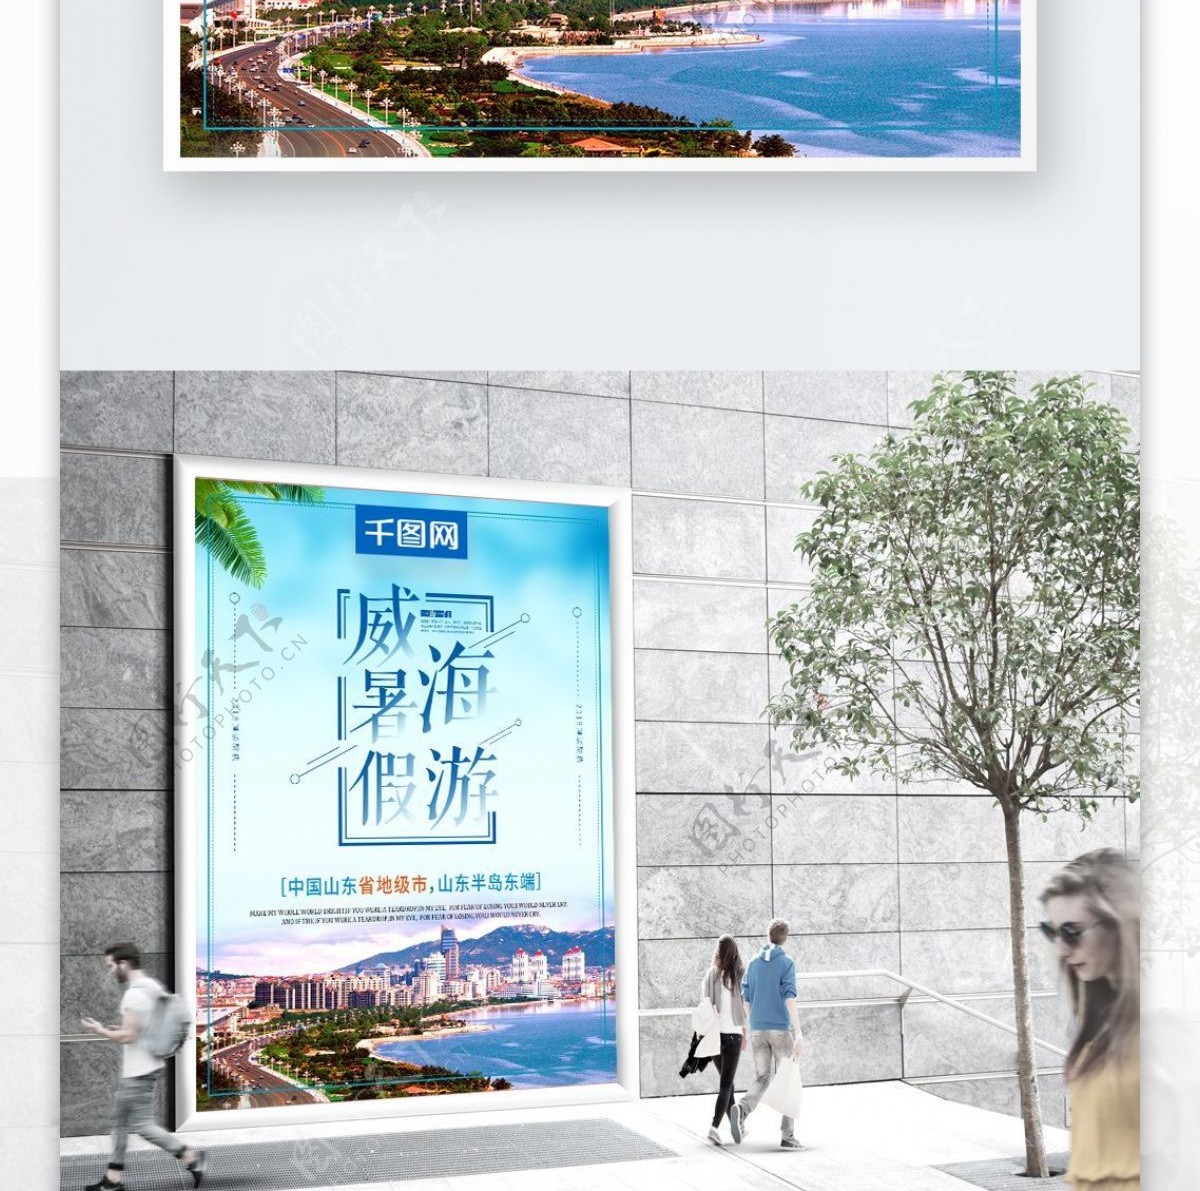 小清新威海暑假游魅力威海宣传海报